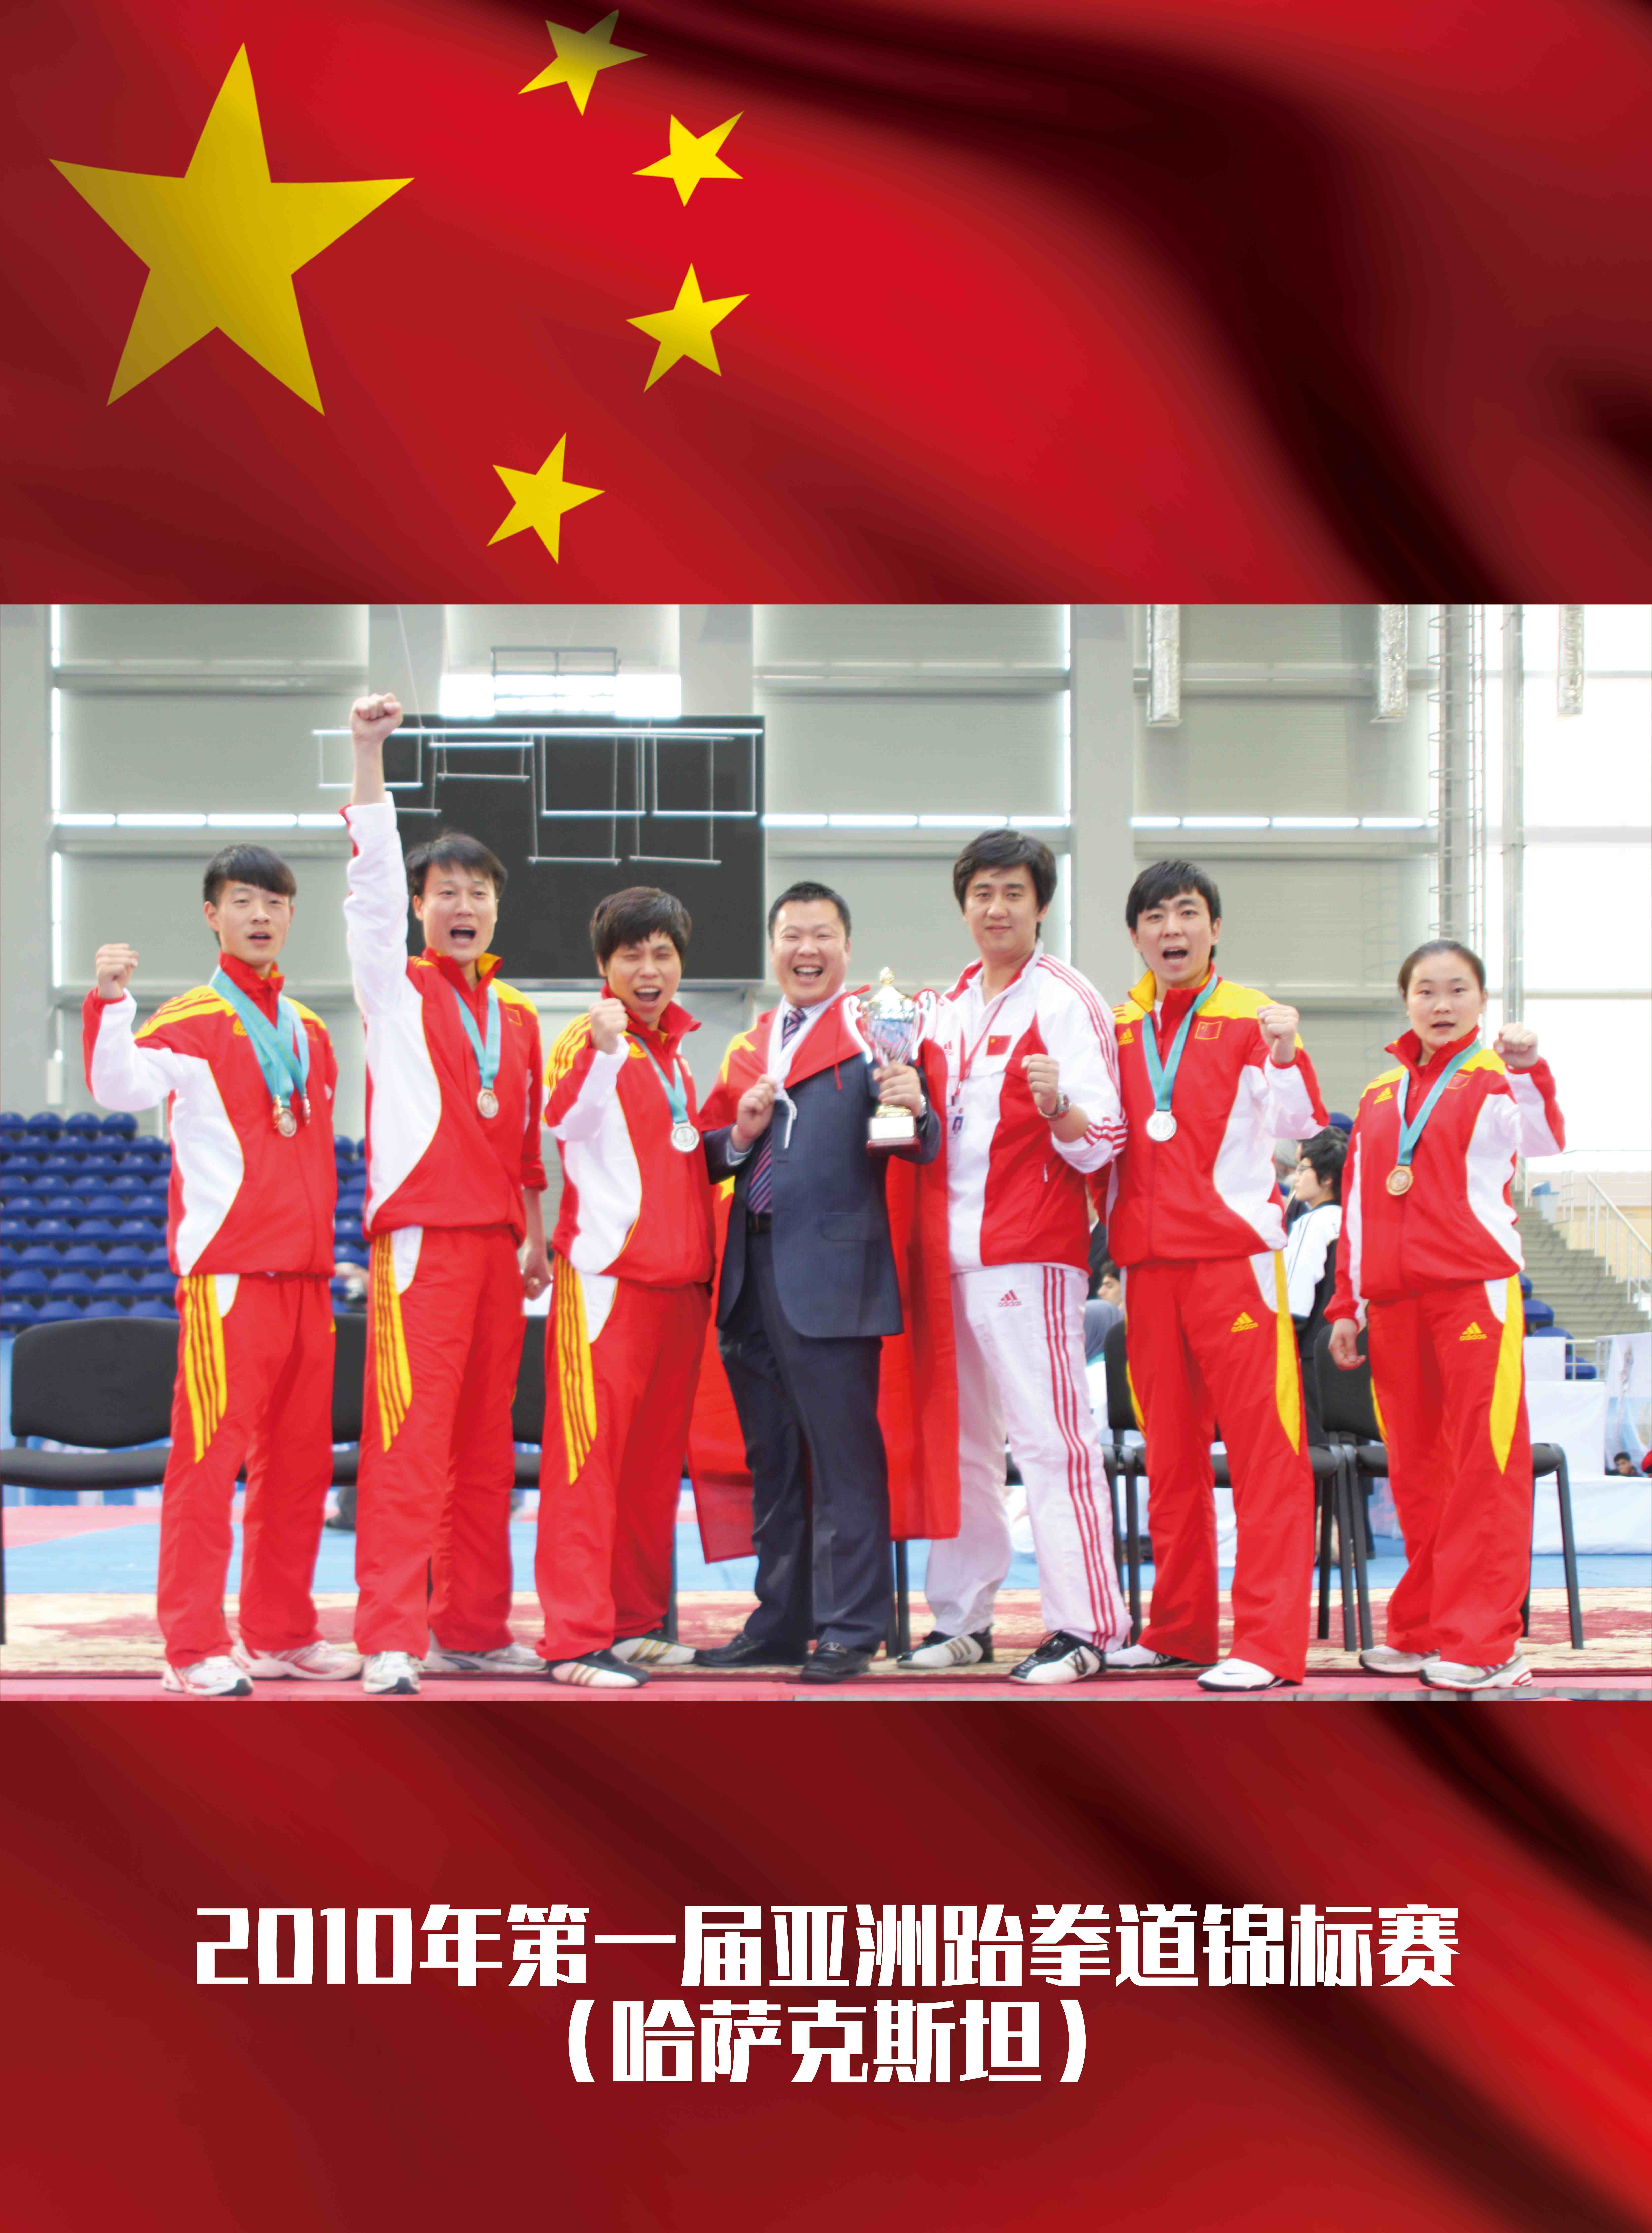 2010年第一届亚洲跆拳道锦标赛【哈萨克斯坦】1金2银1铜